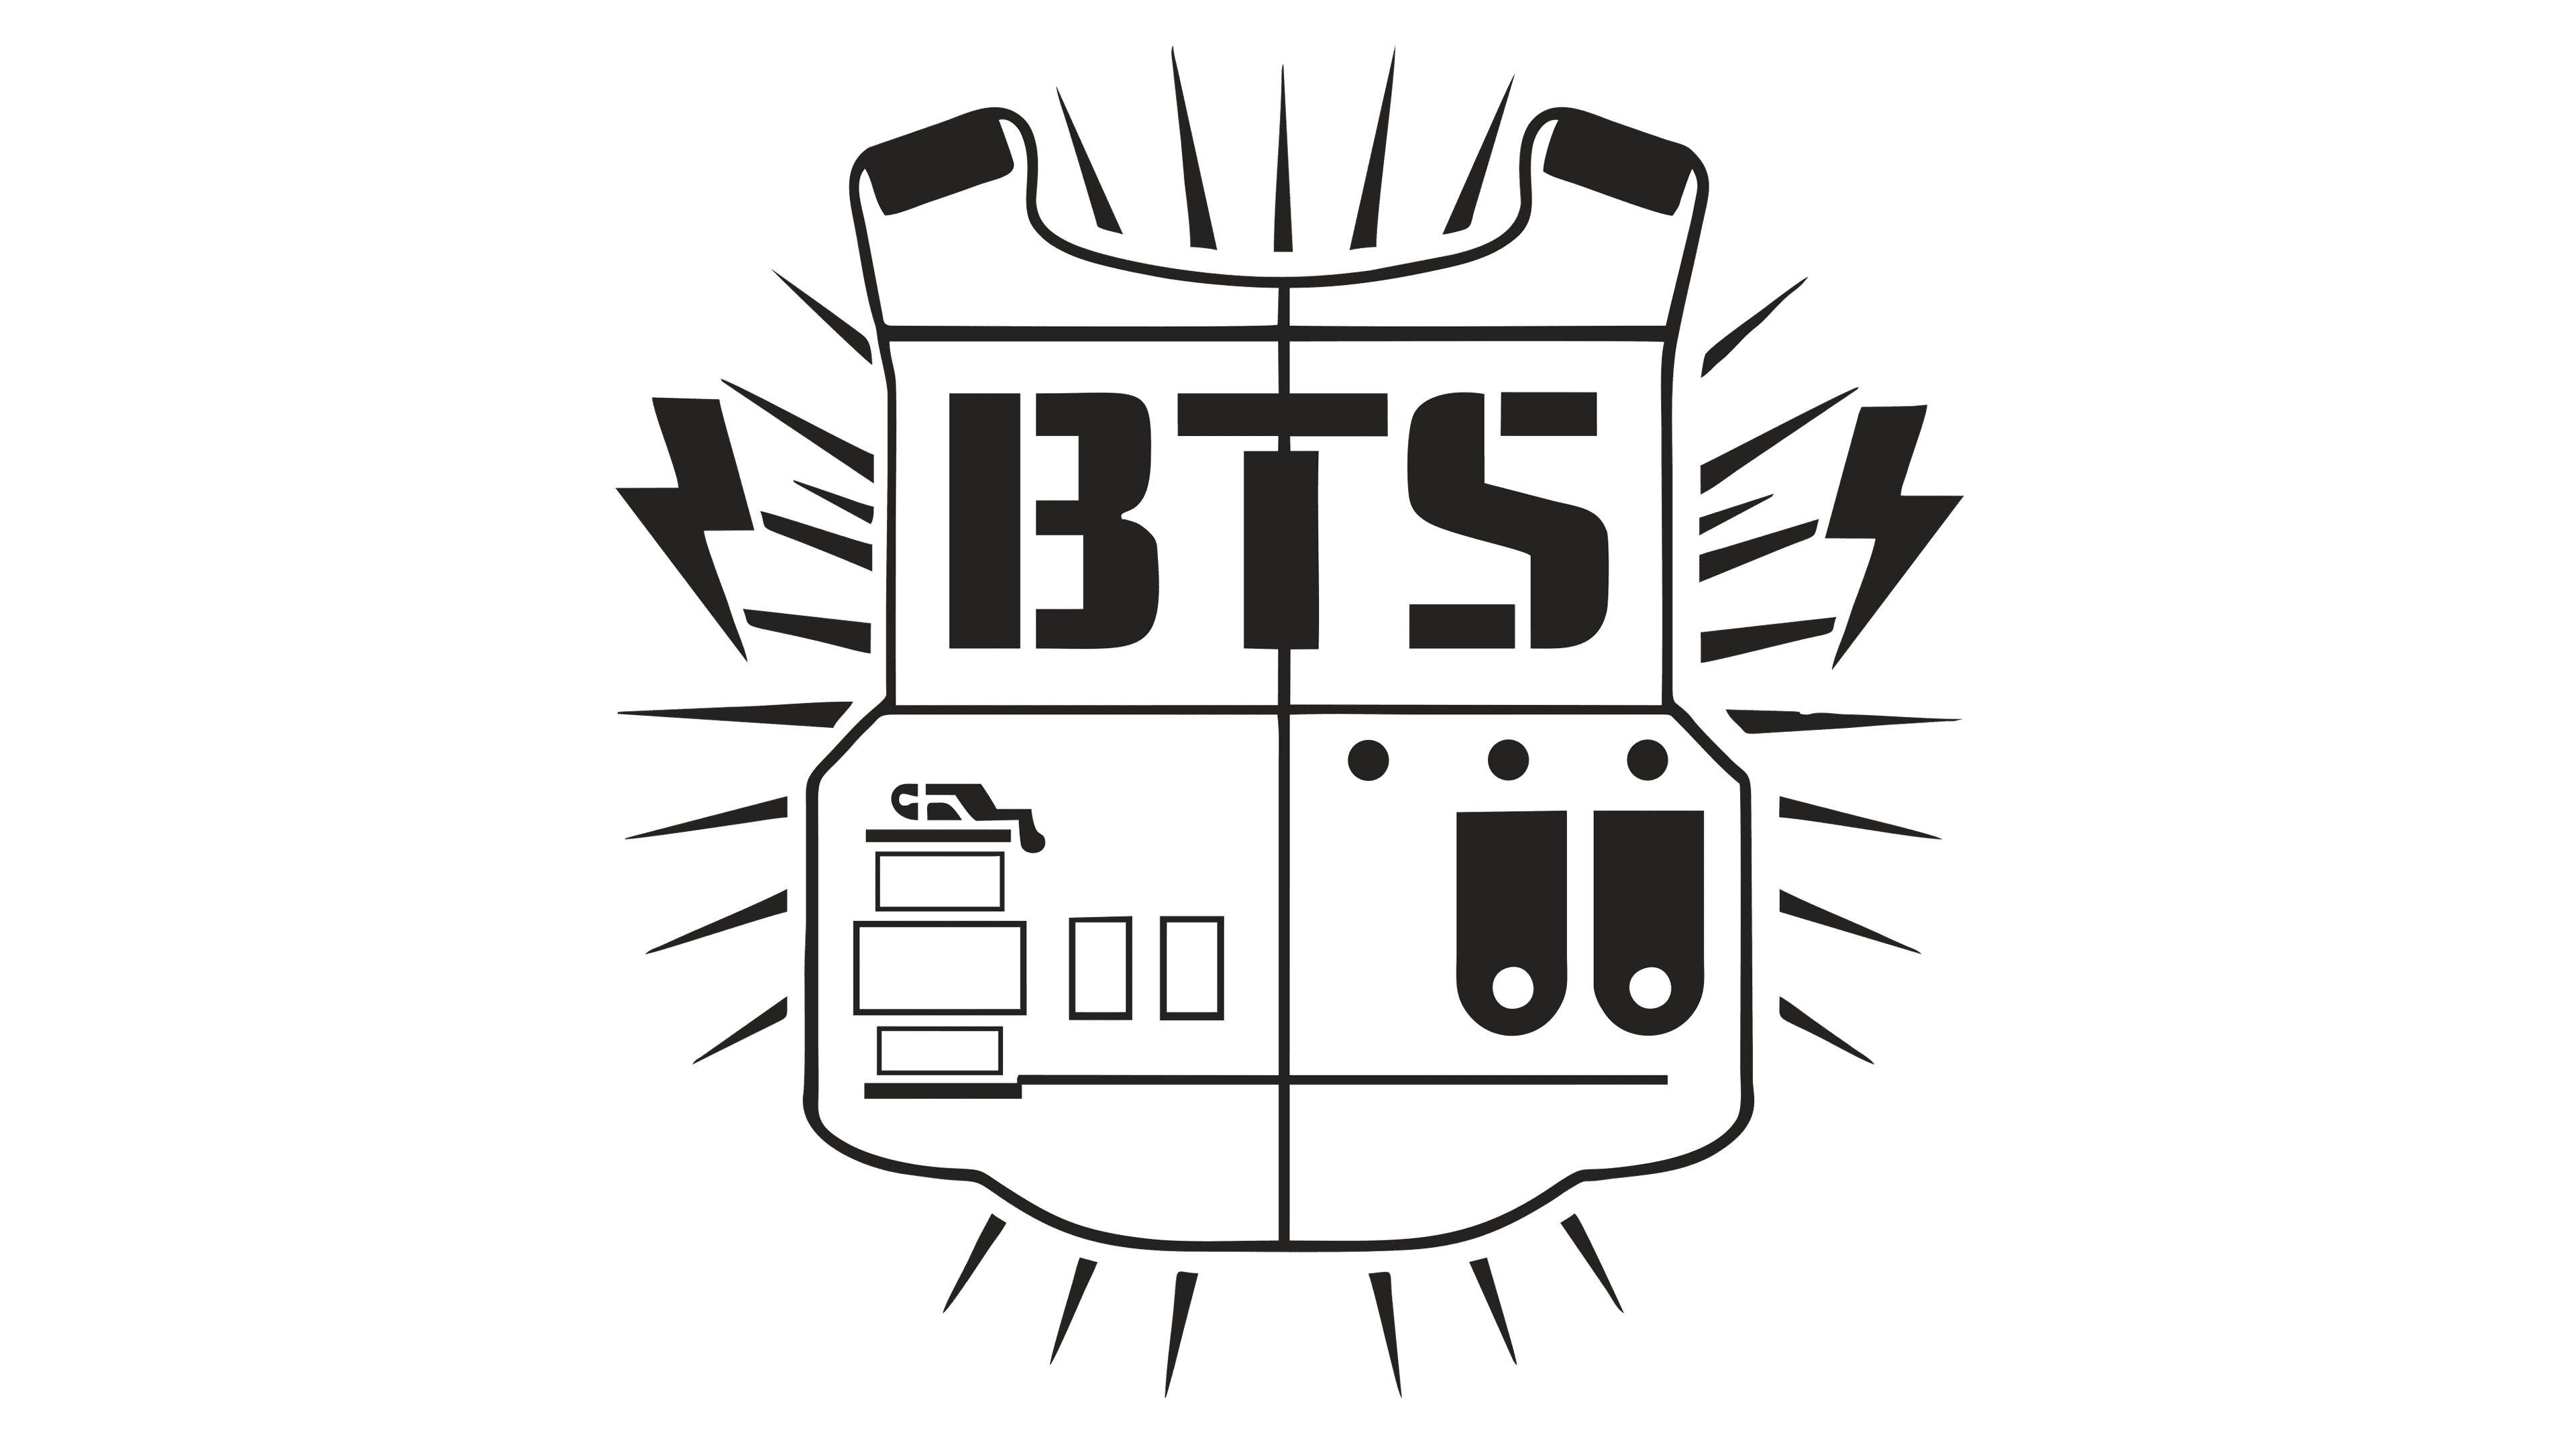 BTS Logo BigHit Entertainment Co., Ltd. K-pop Sticker, Bulletproof Boy  Scouts transparent background PNG clipart | HiClipart